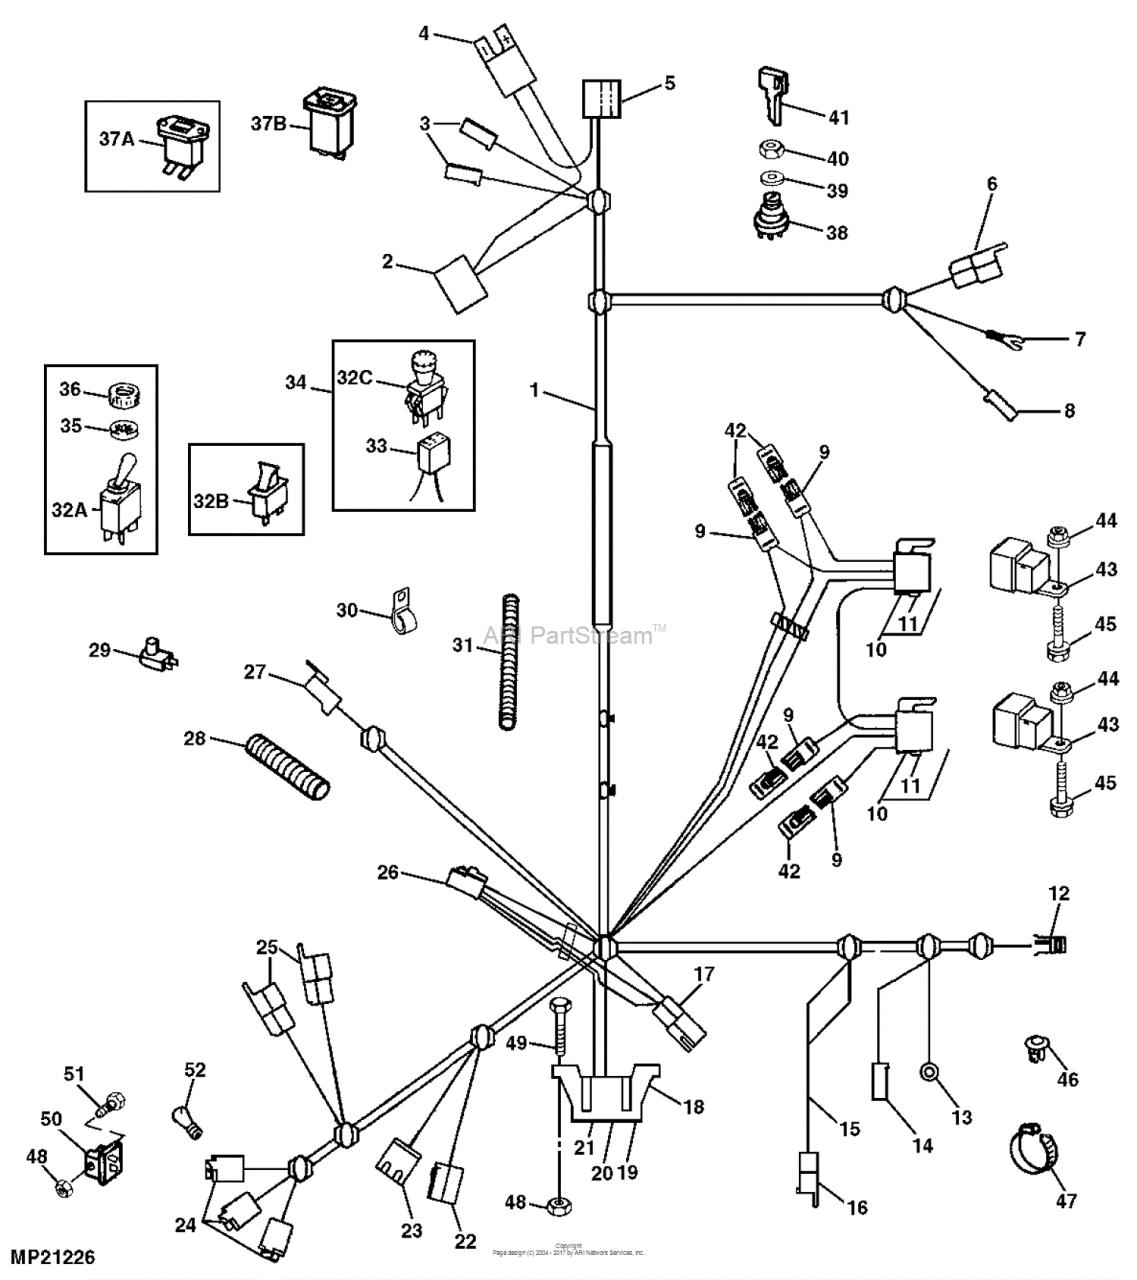 John Deere F525 Wiring Diagram Free Wiring Diagram